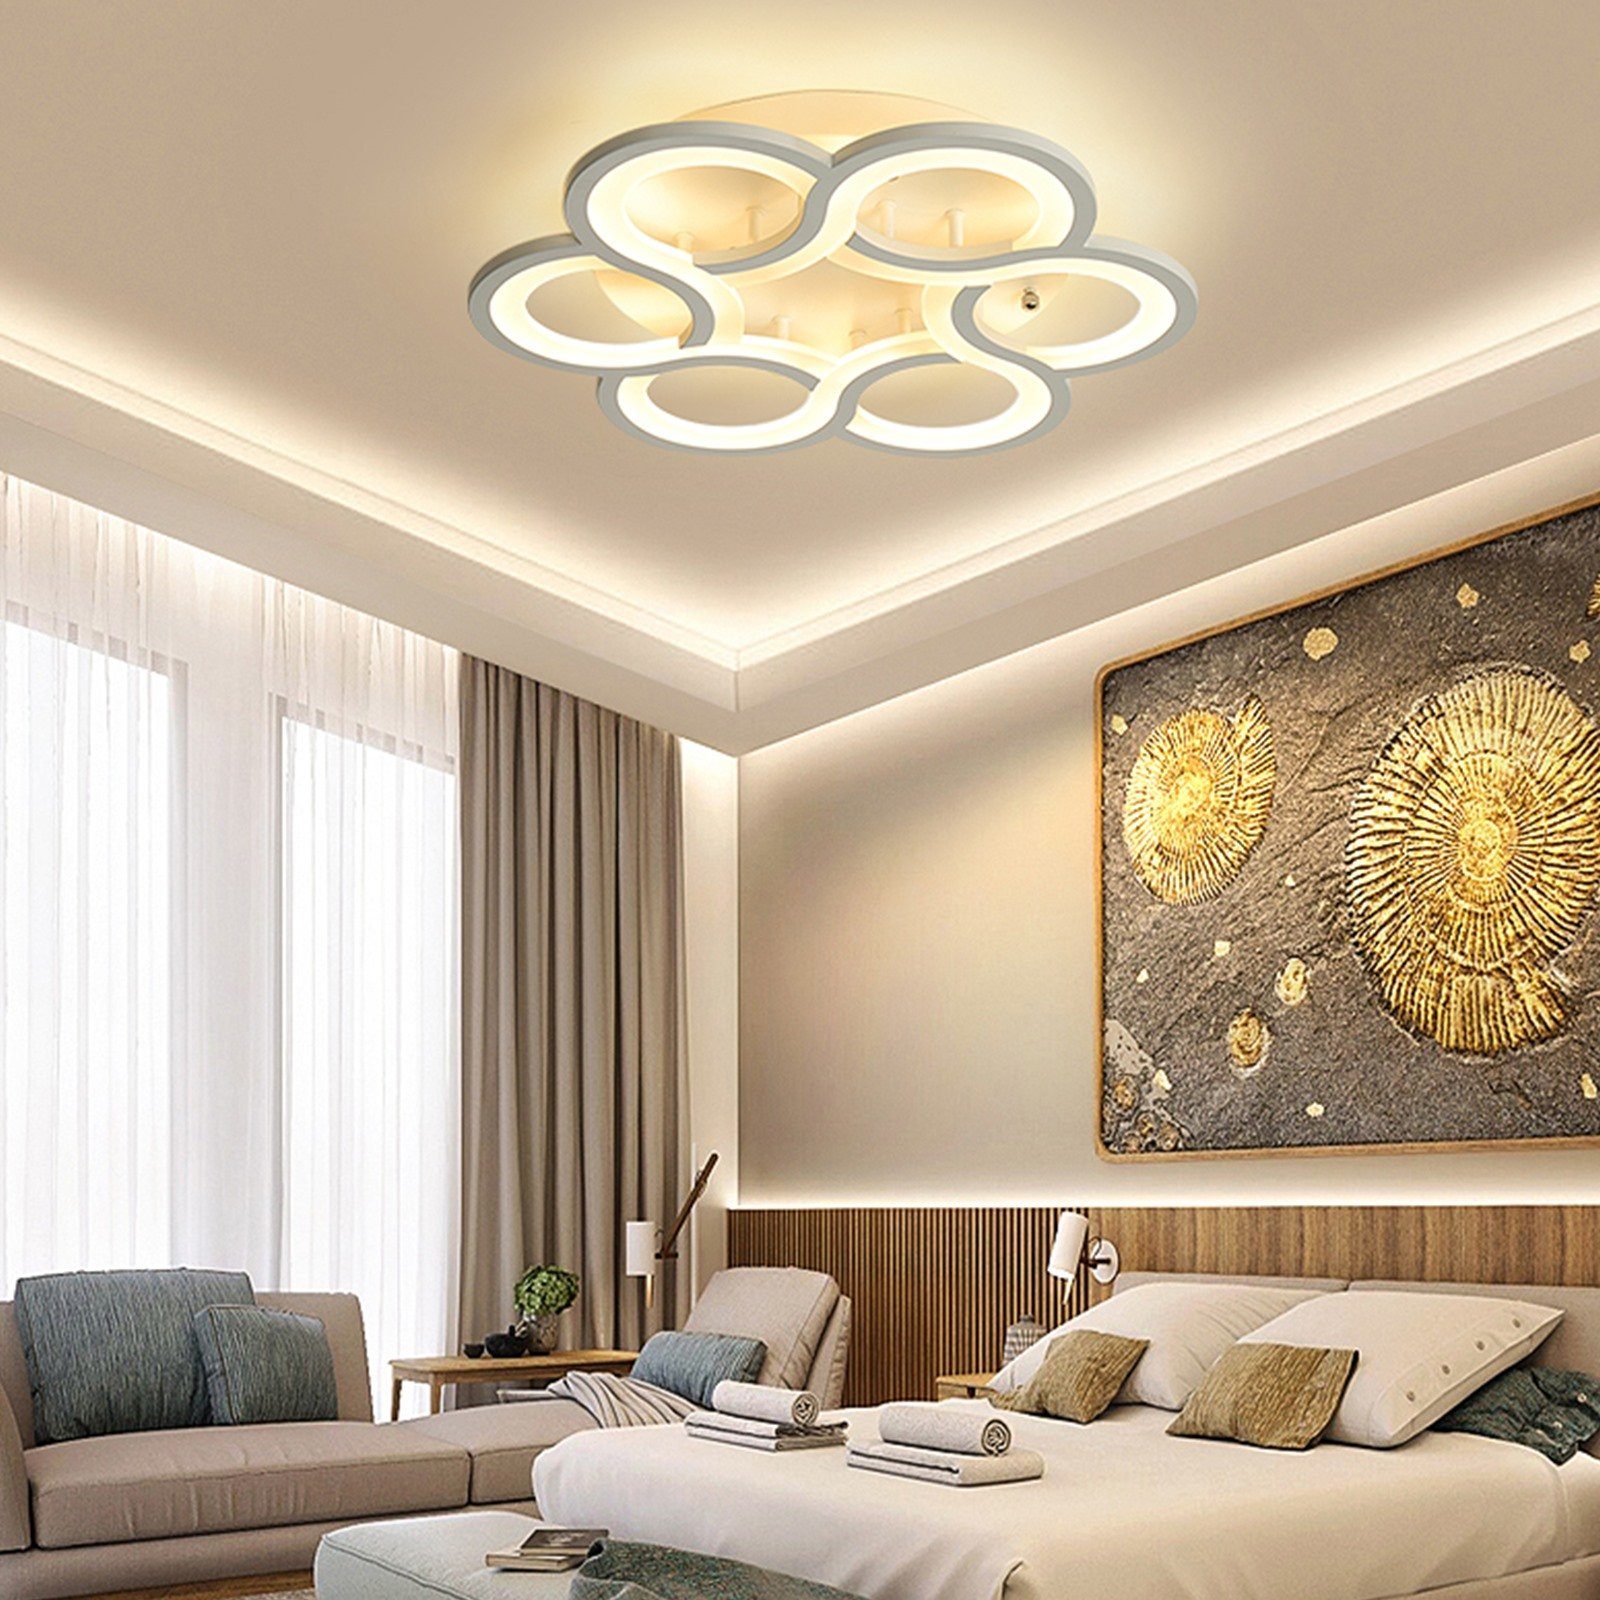 Daskoo Deckenleuchten 43W Dimmbar Deckenlampe Wohnzimmerlampe integriert, Modern Fernbedienung, LED LED Deckenleuchte stufenlos Weiß dimmbar fest Neutralweiß,Warmweiß,Kaltweiß